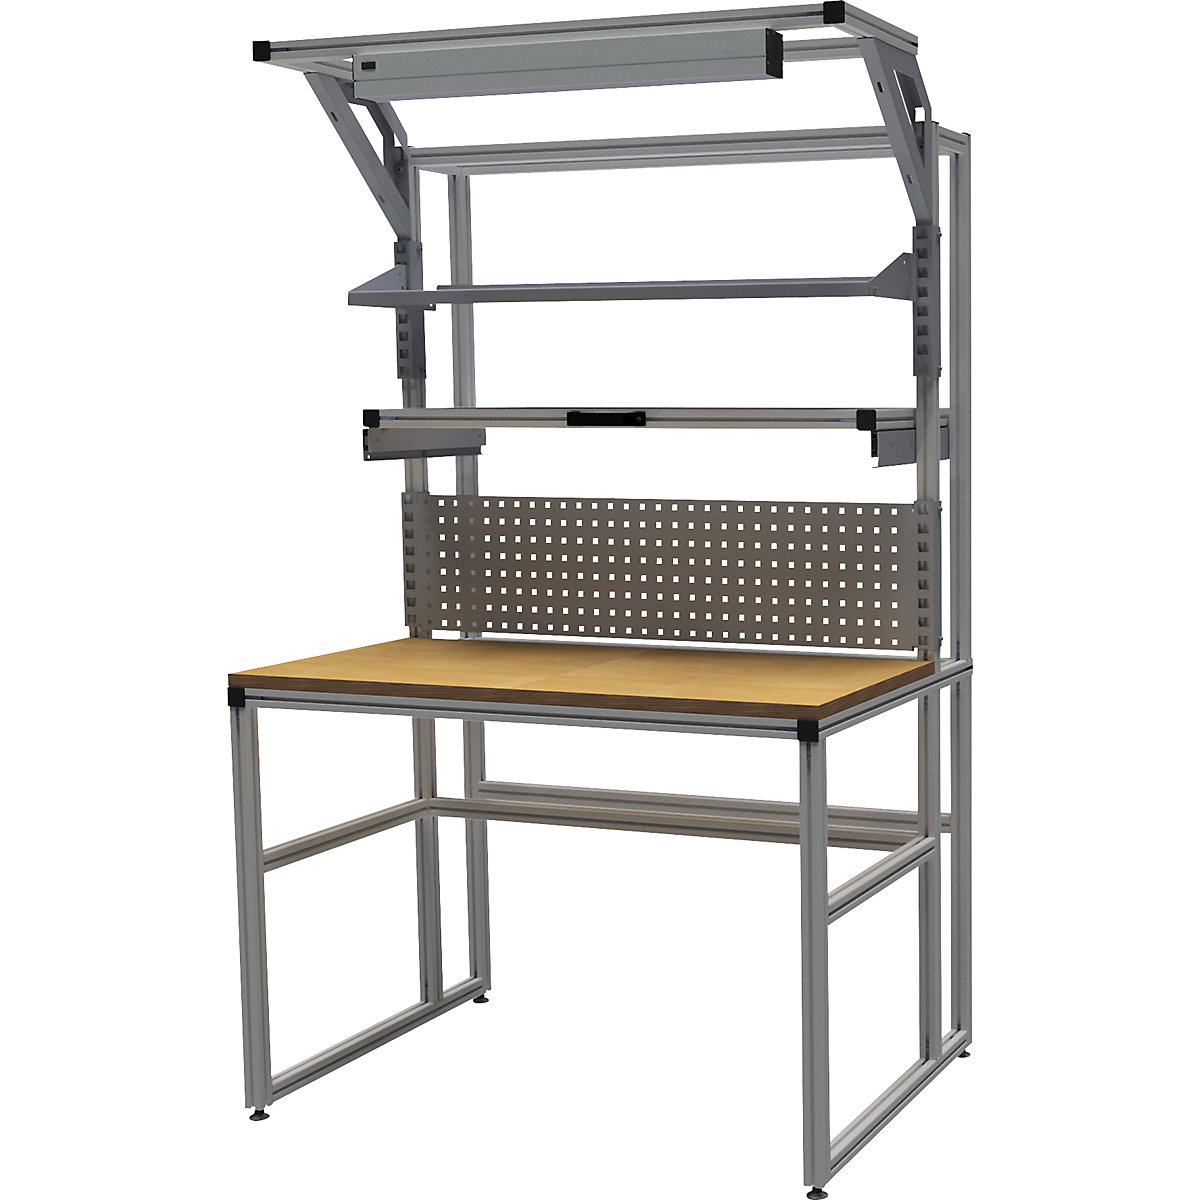 Stół warsztatowy aluminiowy workalu&reg; z modułem systemowym, jednostronny - bedrunka hirth